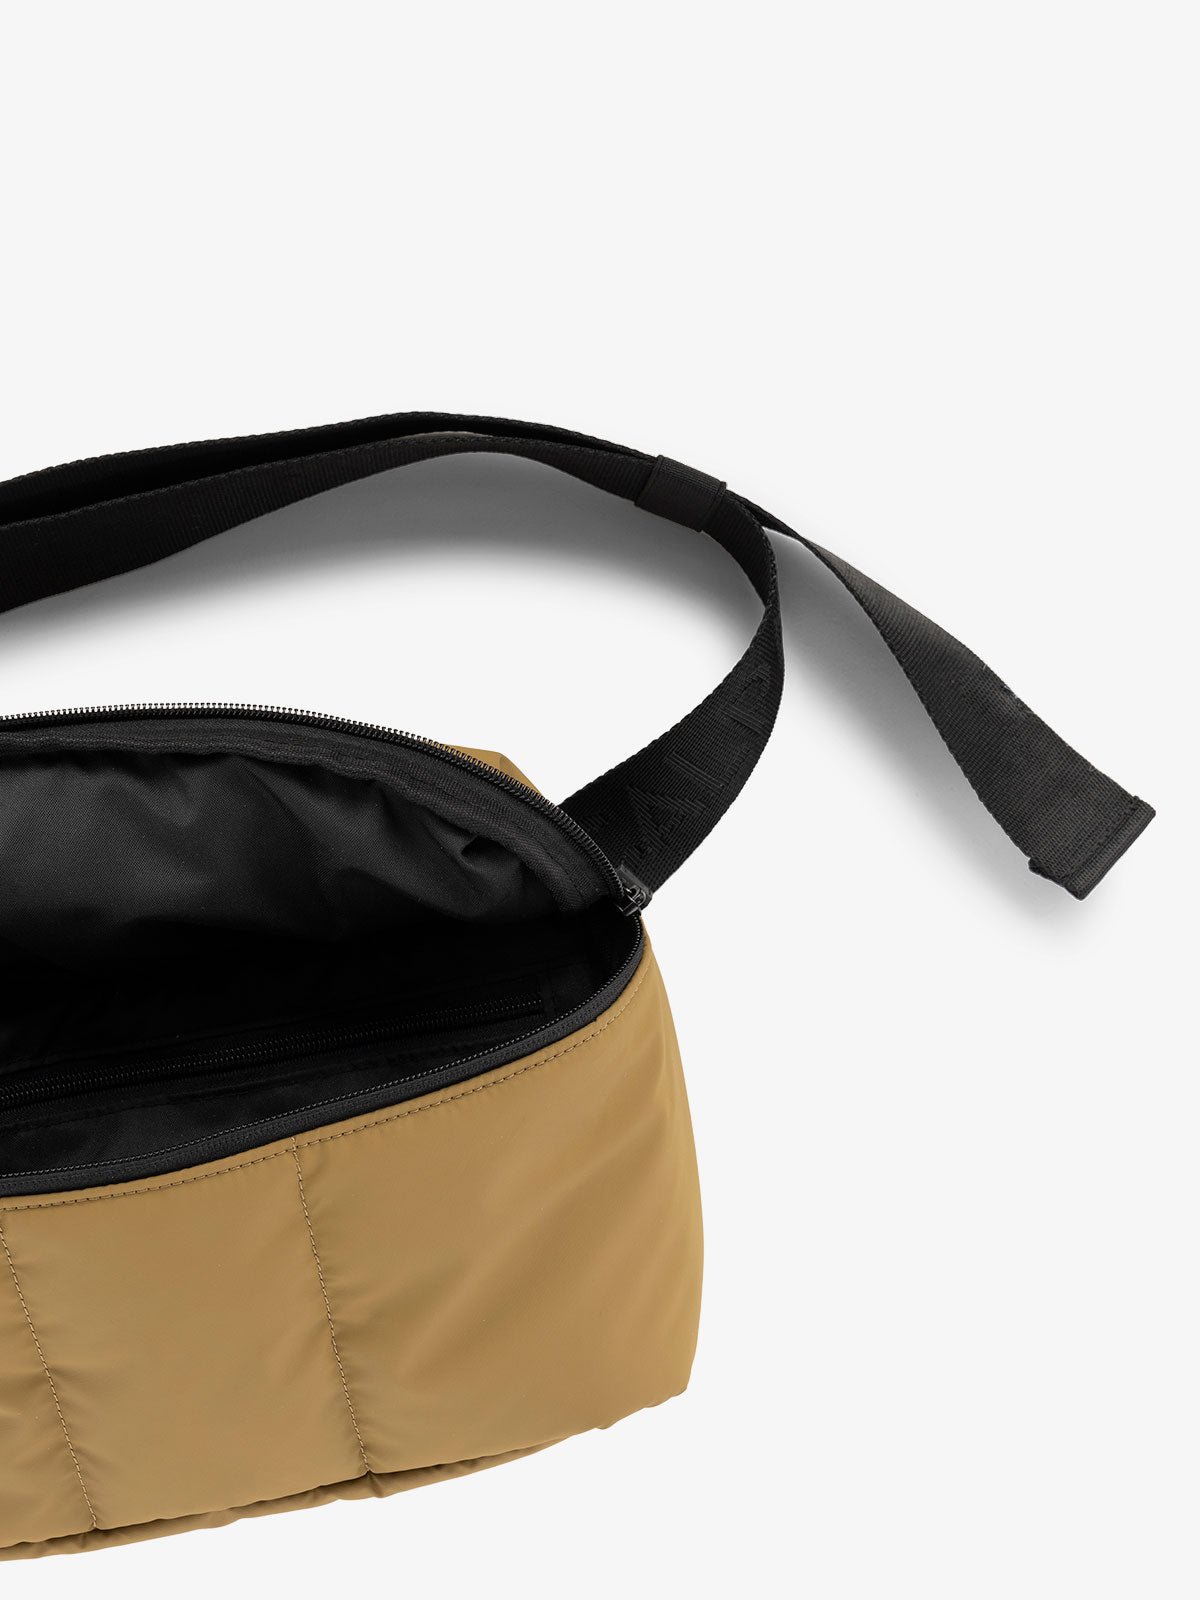 CALPAK Luka Belt Bag close up interior and strap in brown